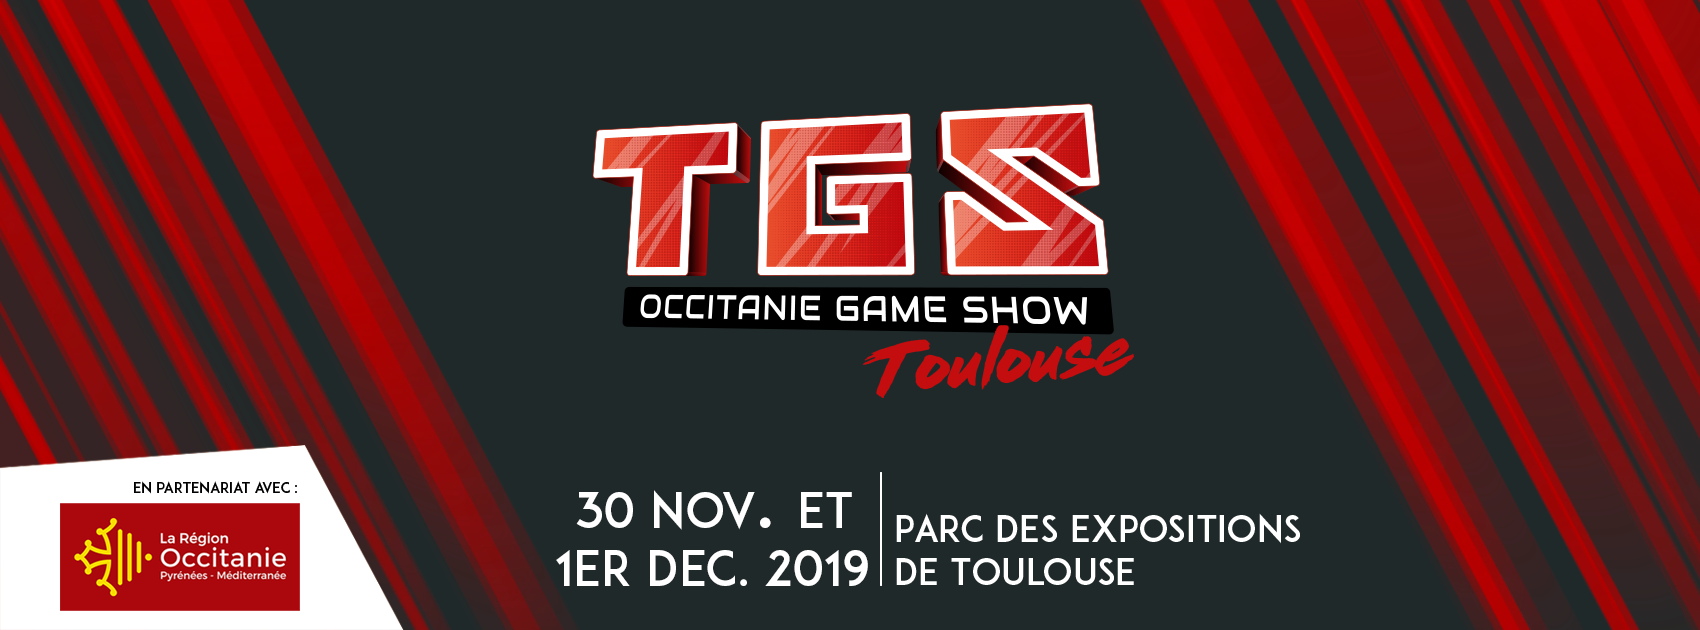 L'agenda du week-end - Que faire du 29 novembre au 1er décembre 2019 ? TGS-occitanie-game-show-toulouse-2019